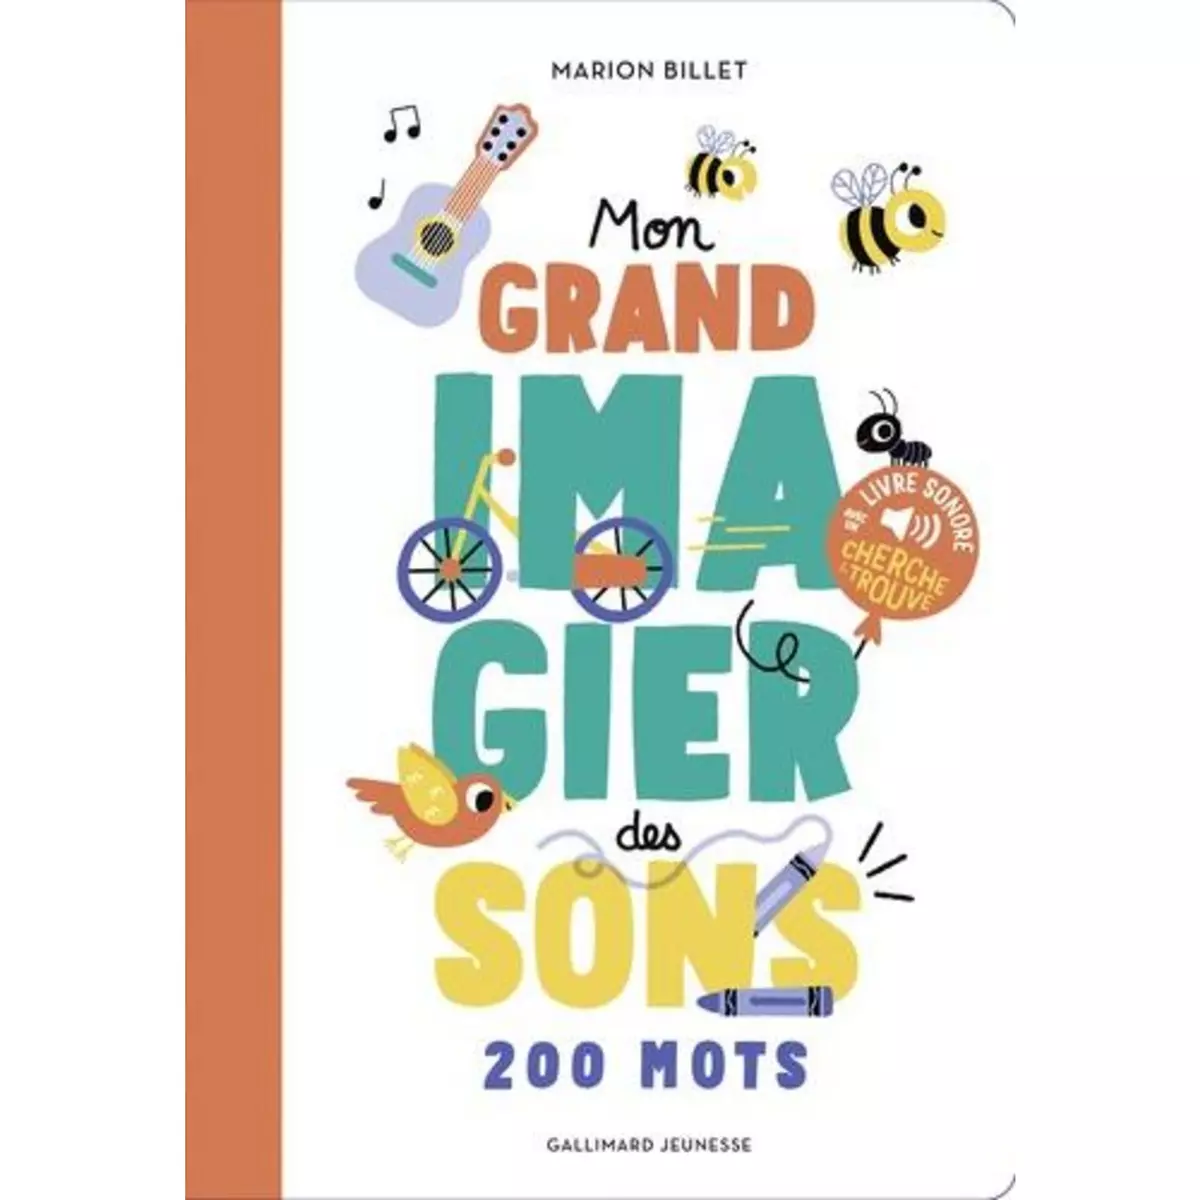  MON GRAND IMAGIER DES SONS. 200 MOTS, Billet Marion